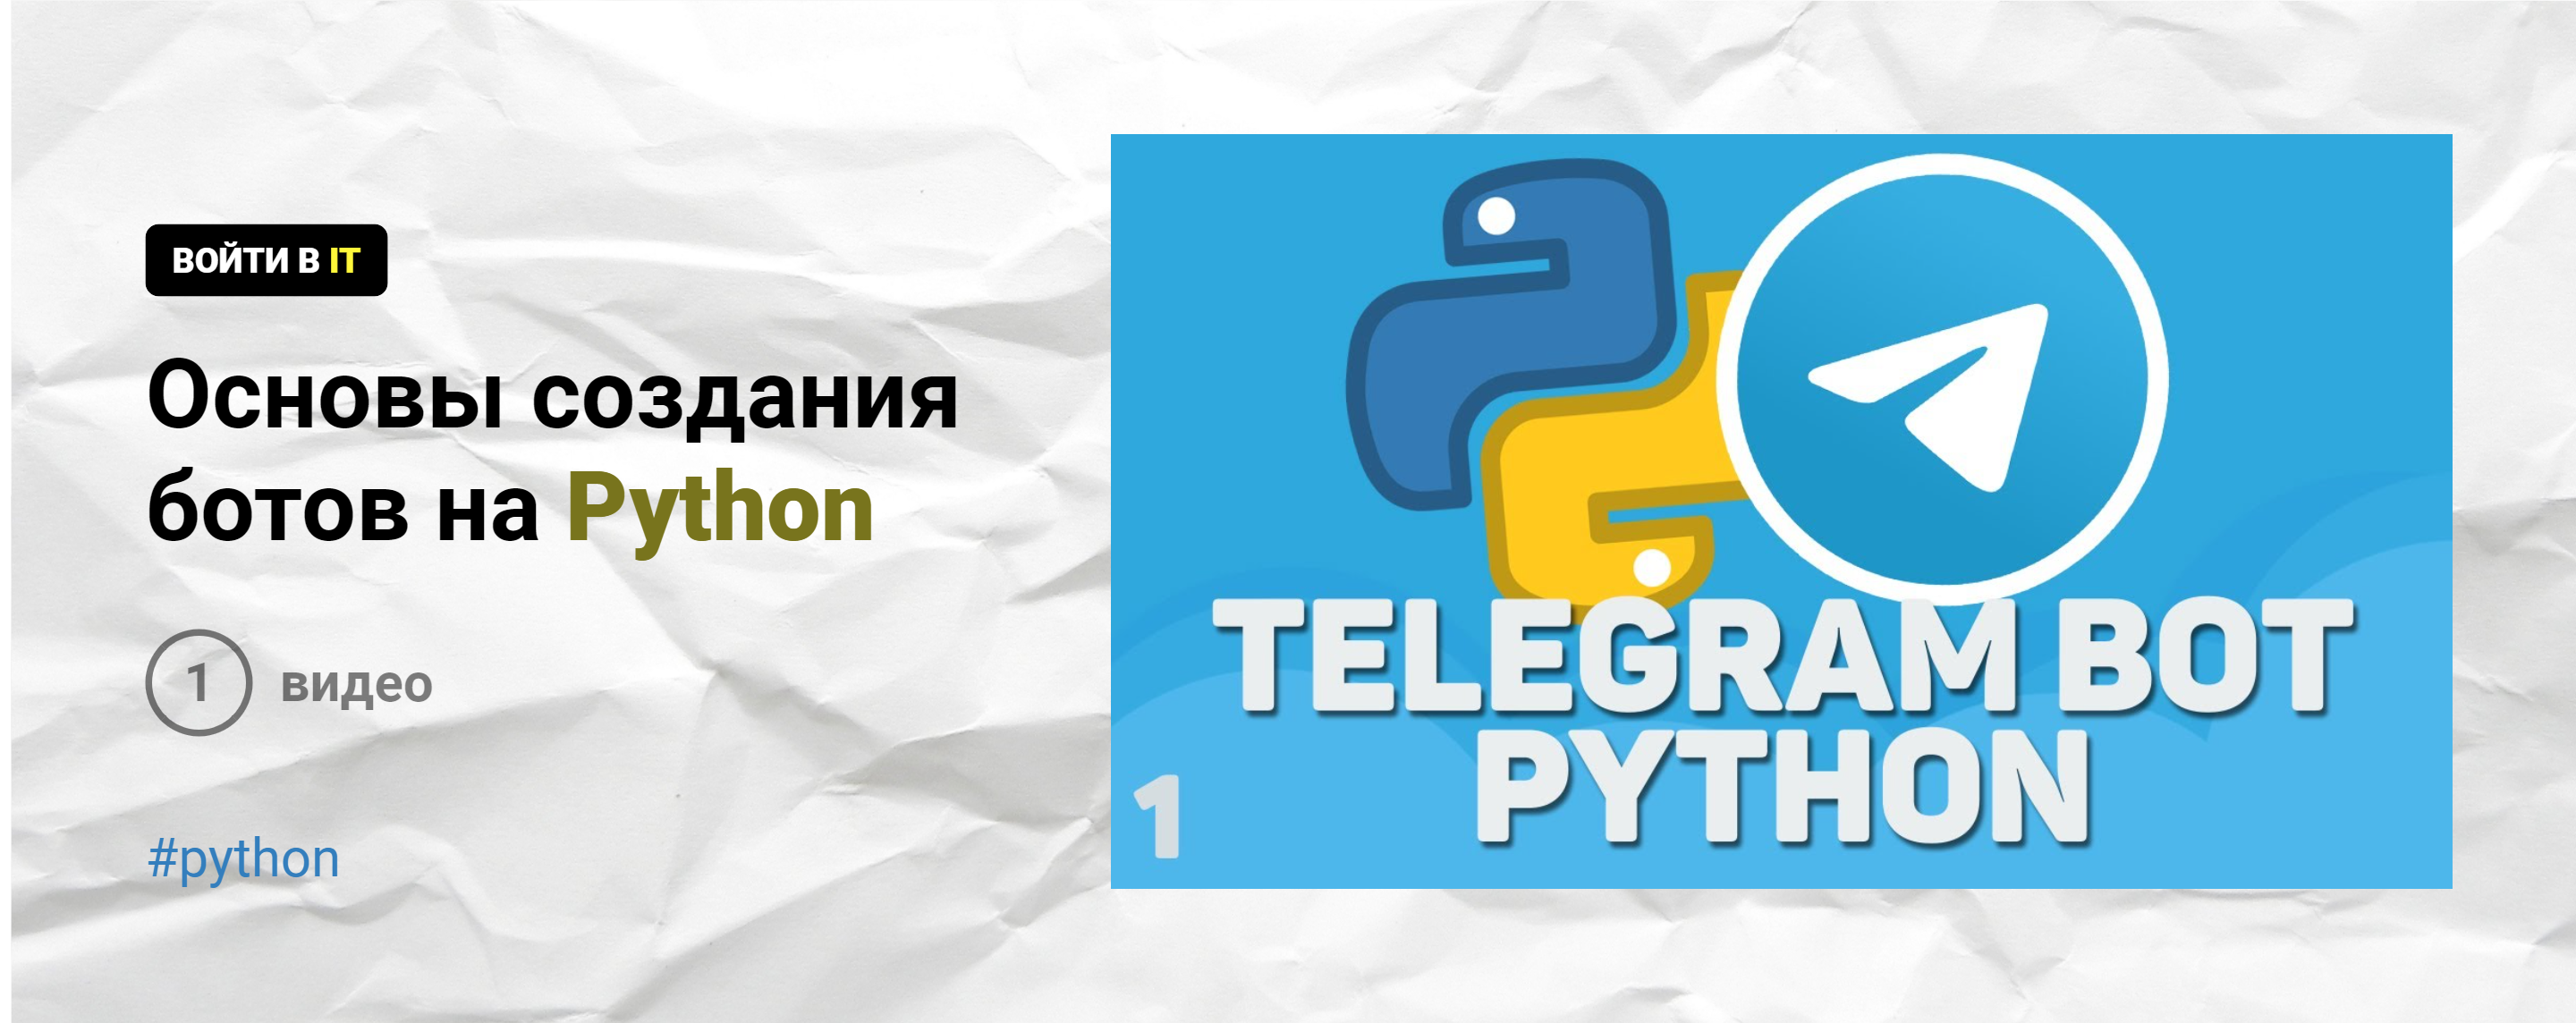 Как создать бота на python для телеграмм фото 105